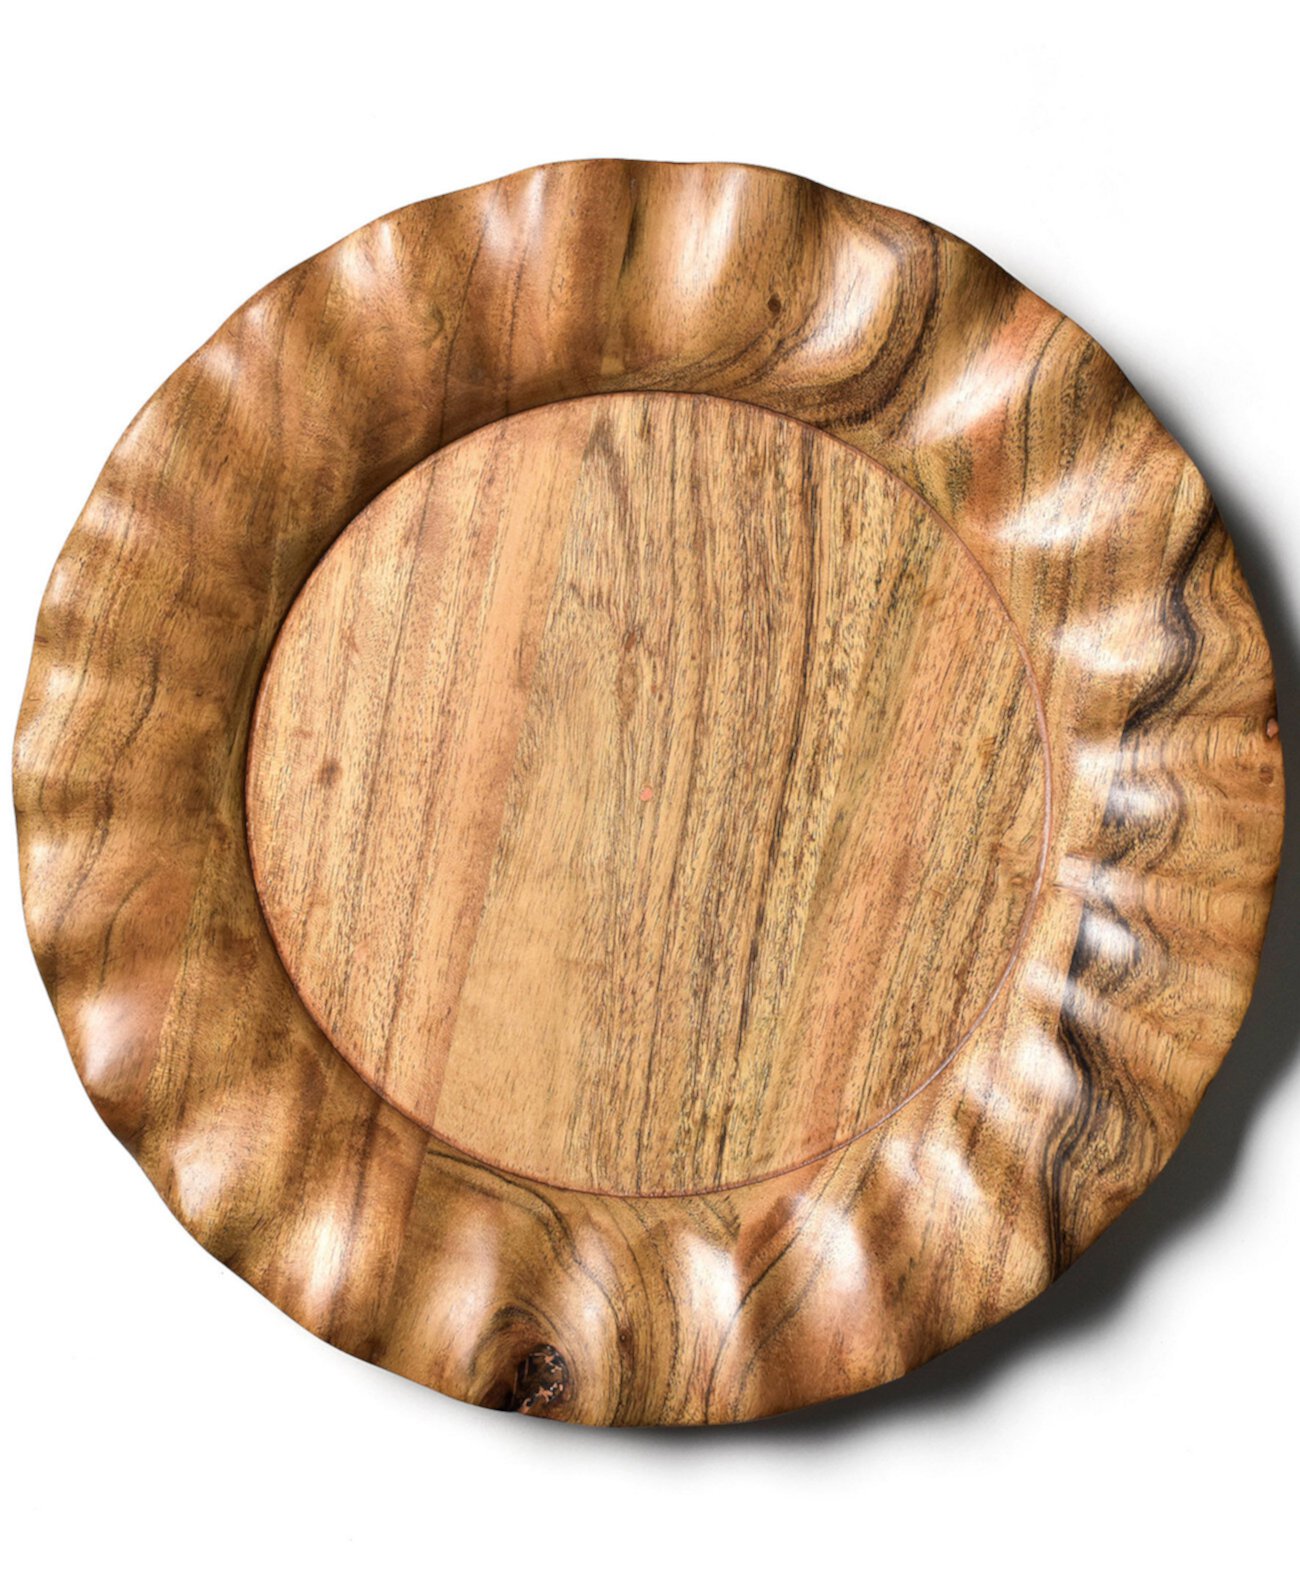 Деревянная тарелка с рюшами Fundamental, 13 дюймов Coton Colors